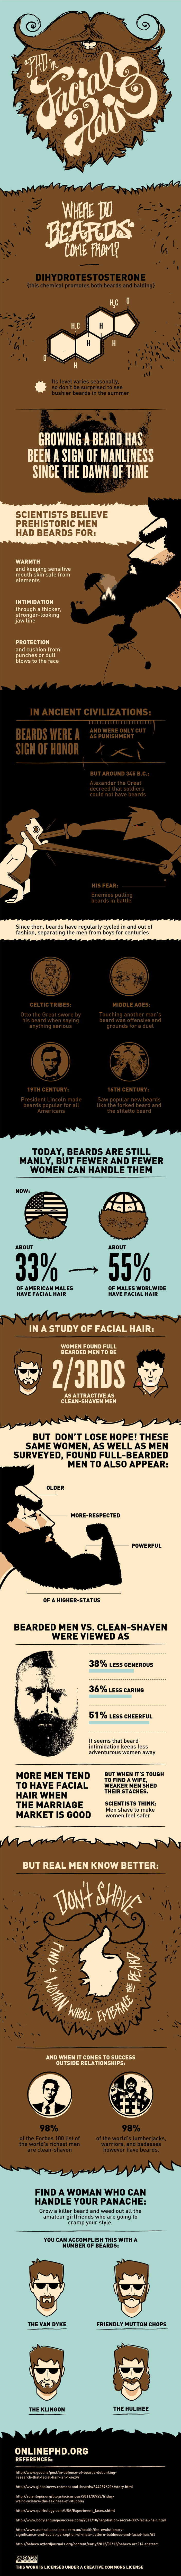 A PhD In Facial Hair